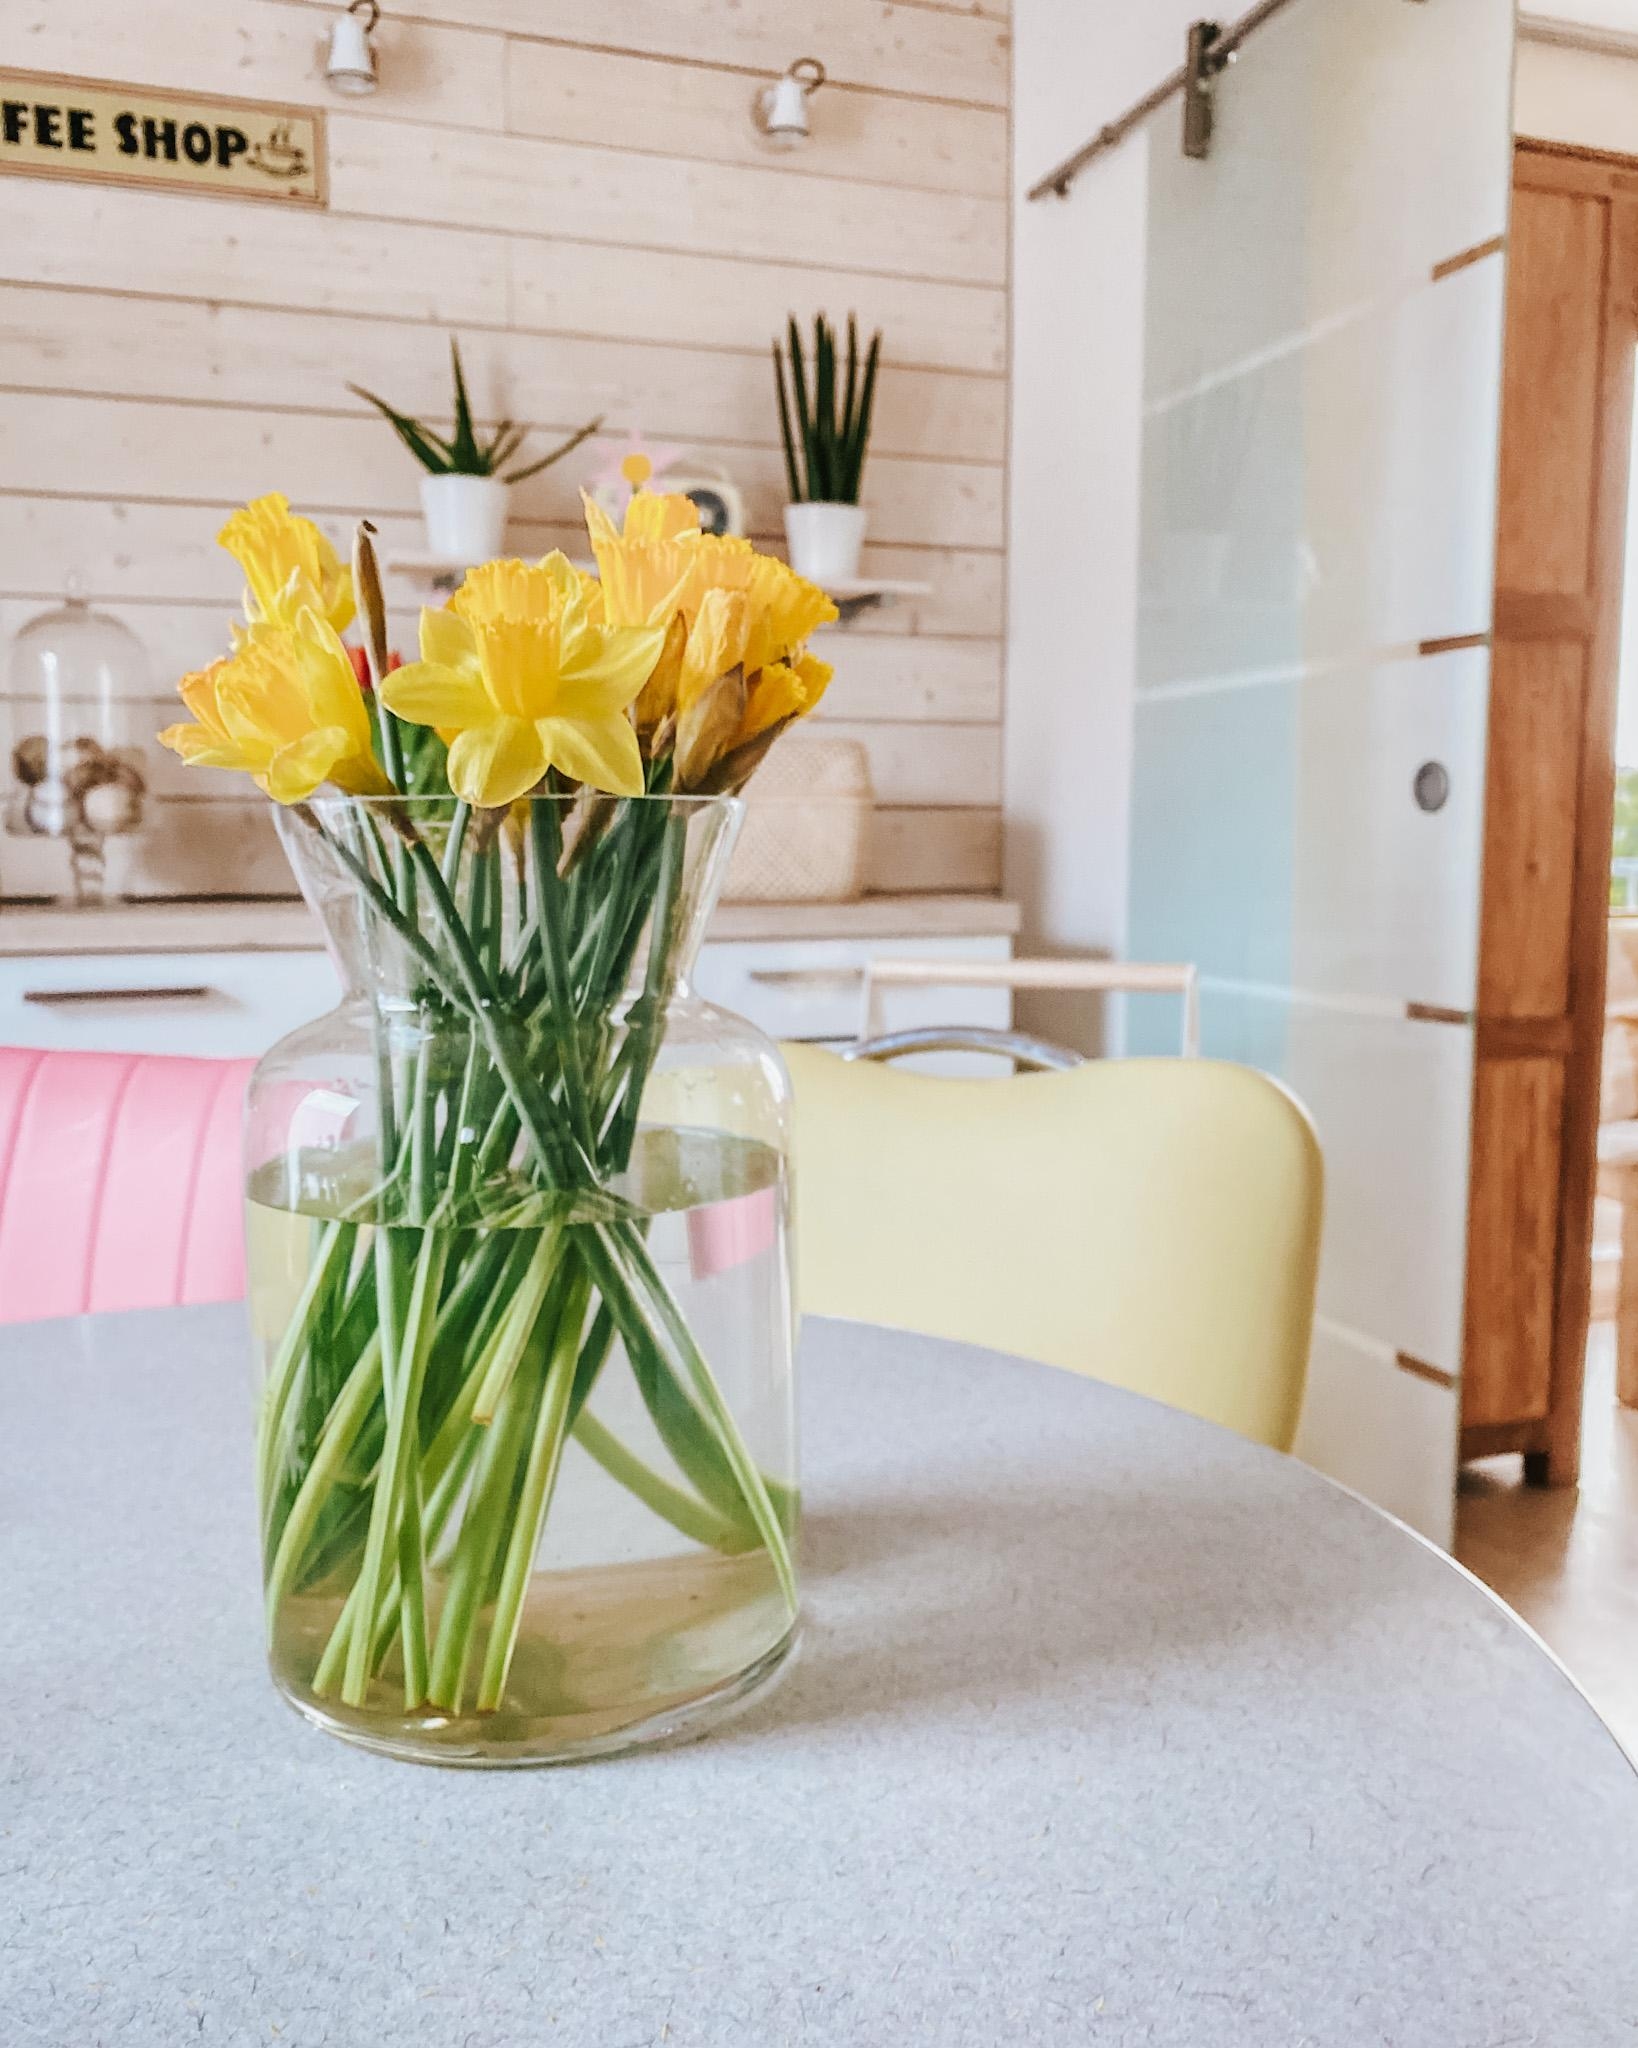 Blumen dürfen auch in der Küche nicht fehlen
#blumenliebe #küche #esstisch